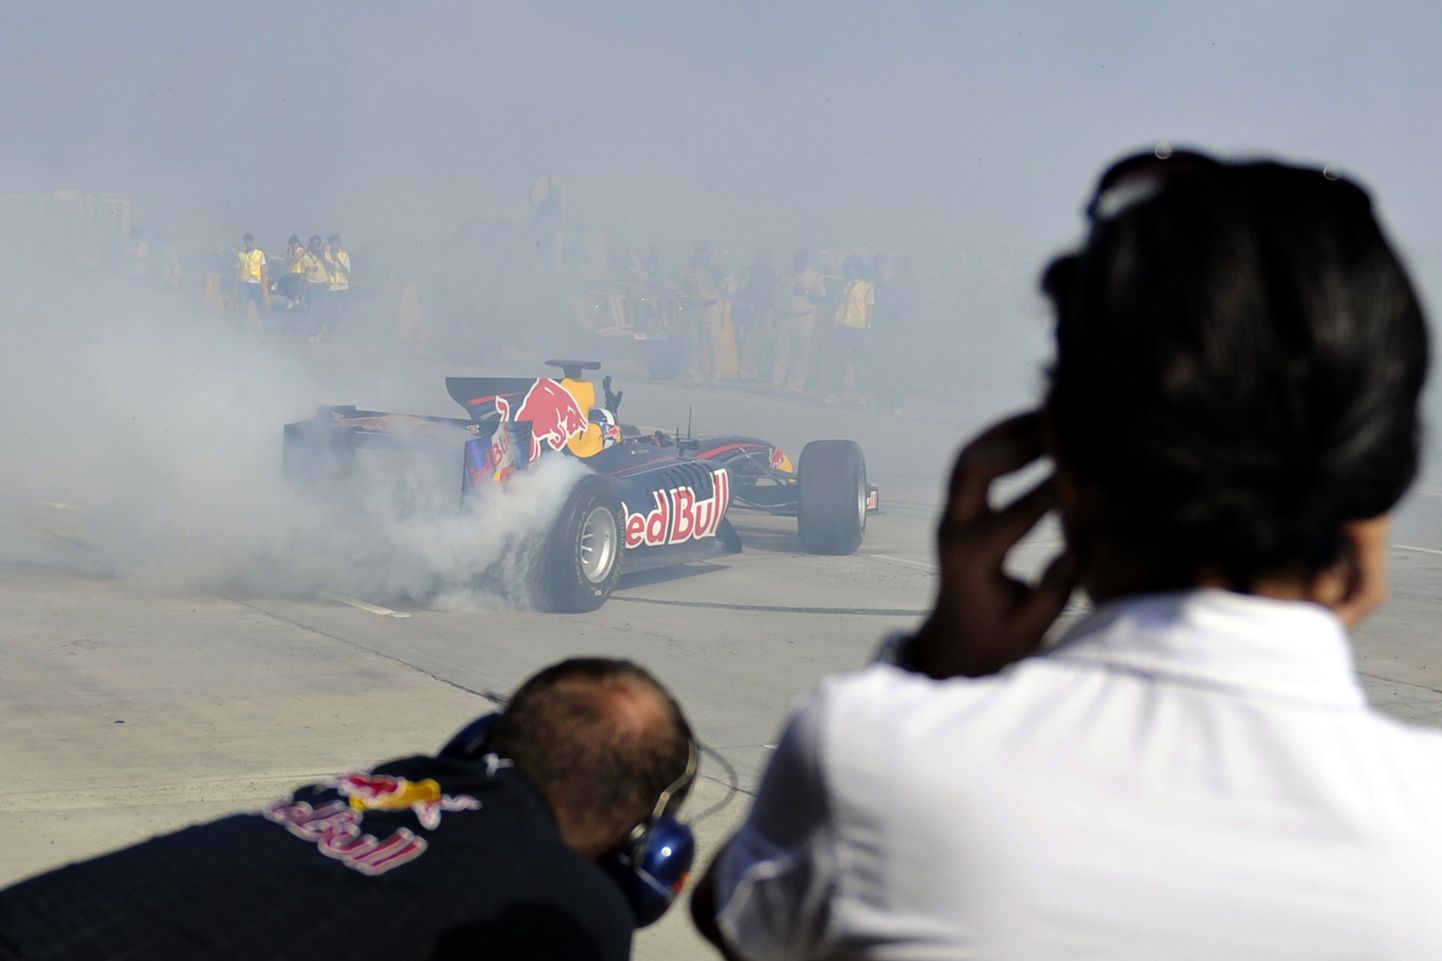 David Coulthard pigistas Mumbais peetud Red Bulli promoüritusel vormelist viimase välja. Kiiruseületamine tõi ürituse korraldajatele ka korraliku trahvi.